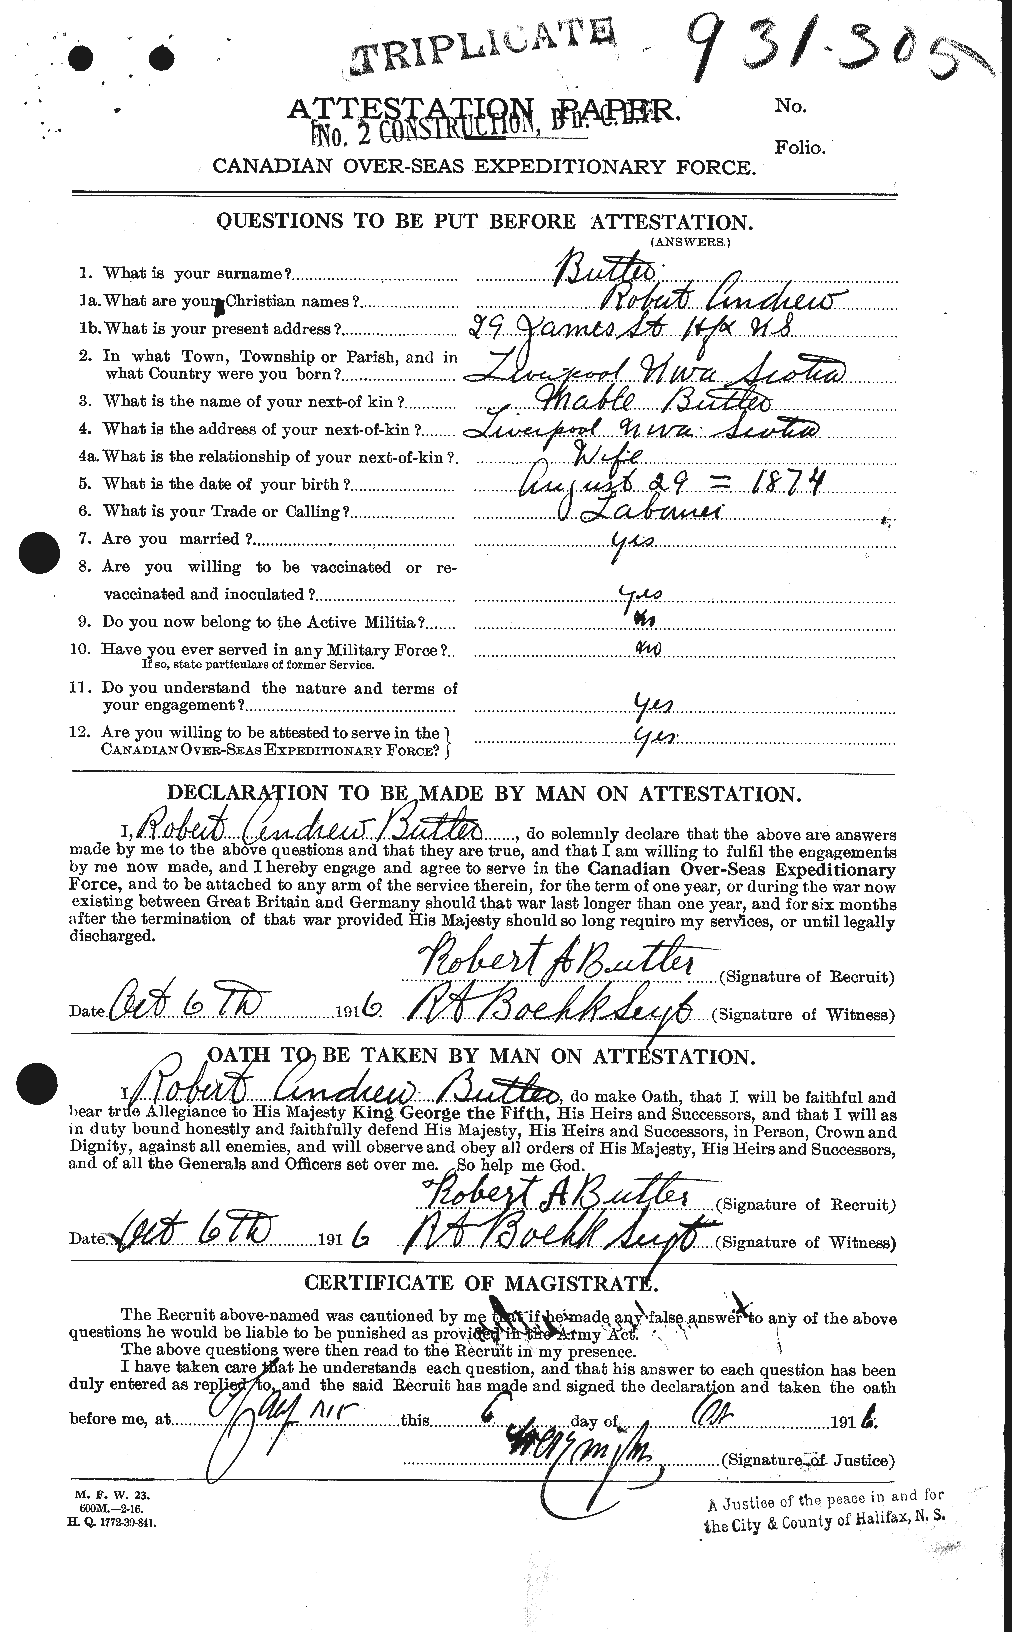 Dossiers du Personnel de la Première Guerre mondiale - CEC 278221a